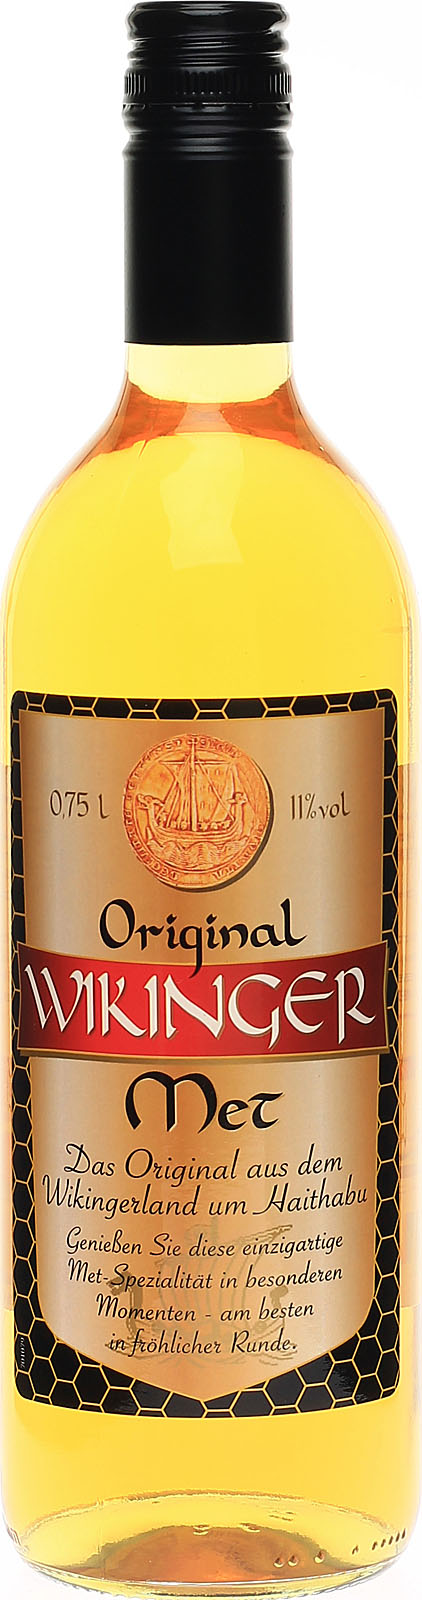 Original, überl Honigwein, köstlicher nach Met Wikinger